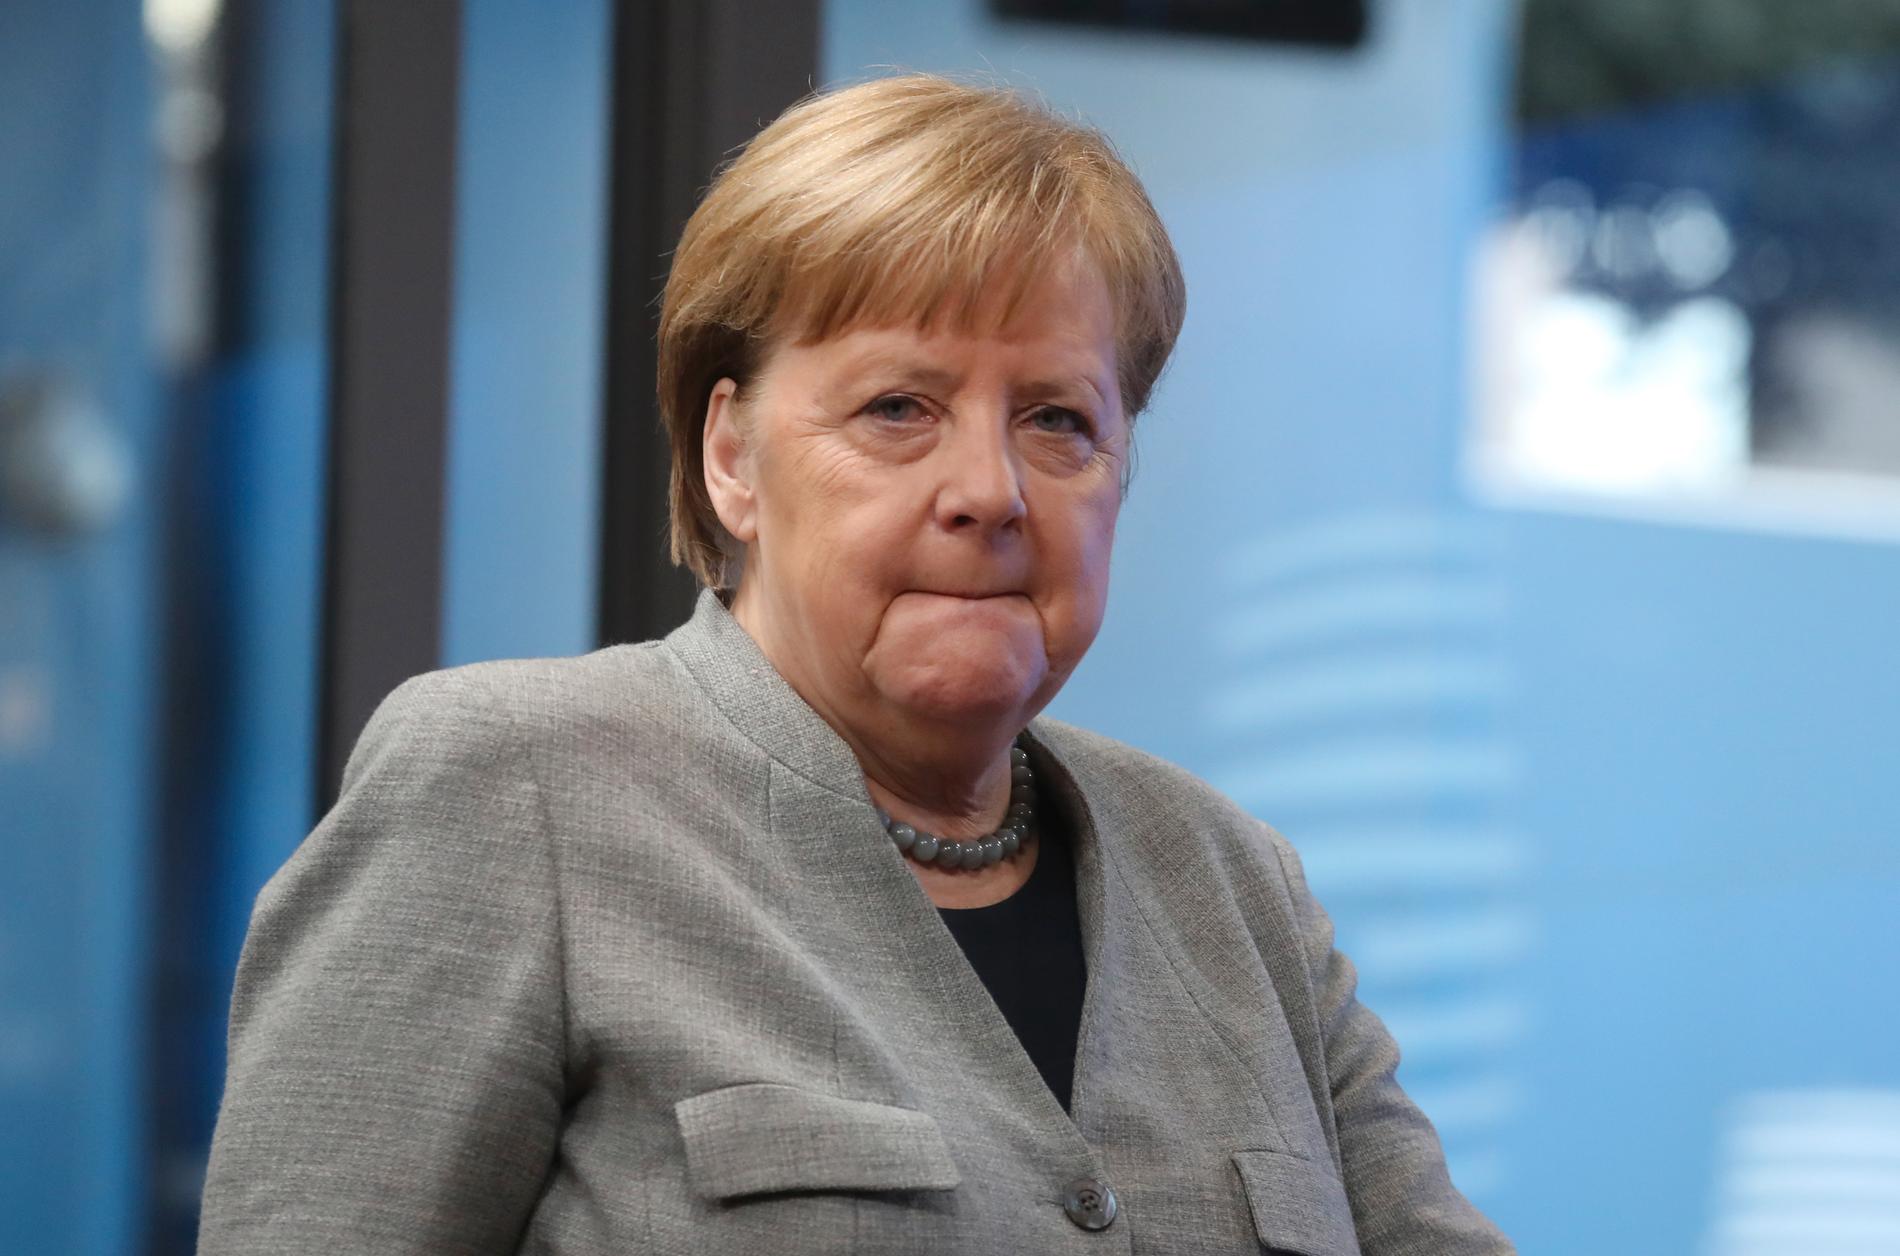 Vem ska efterträda Angela Merkel? Kristdemokraterna kallar till extrakongress för att besvara frågan. Arkivbild.